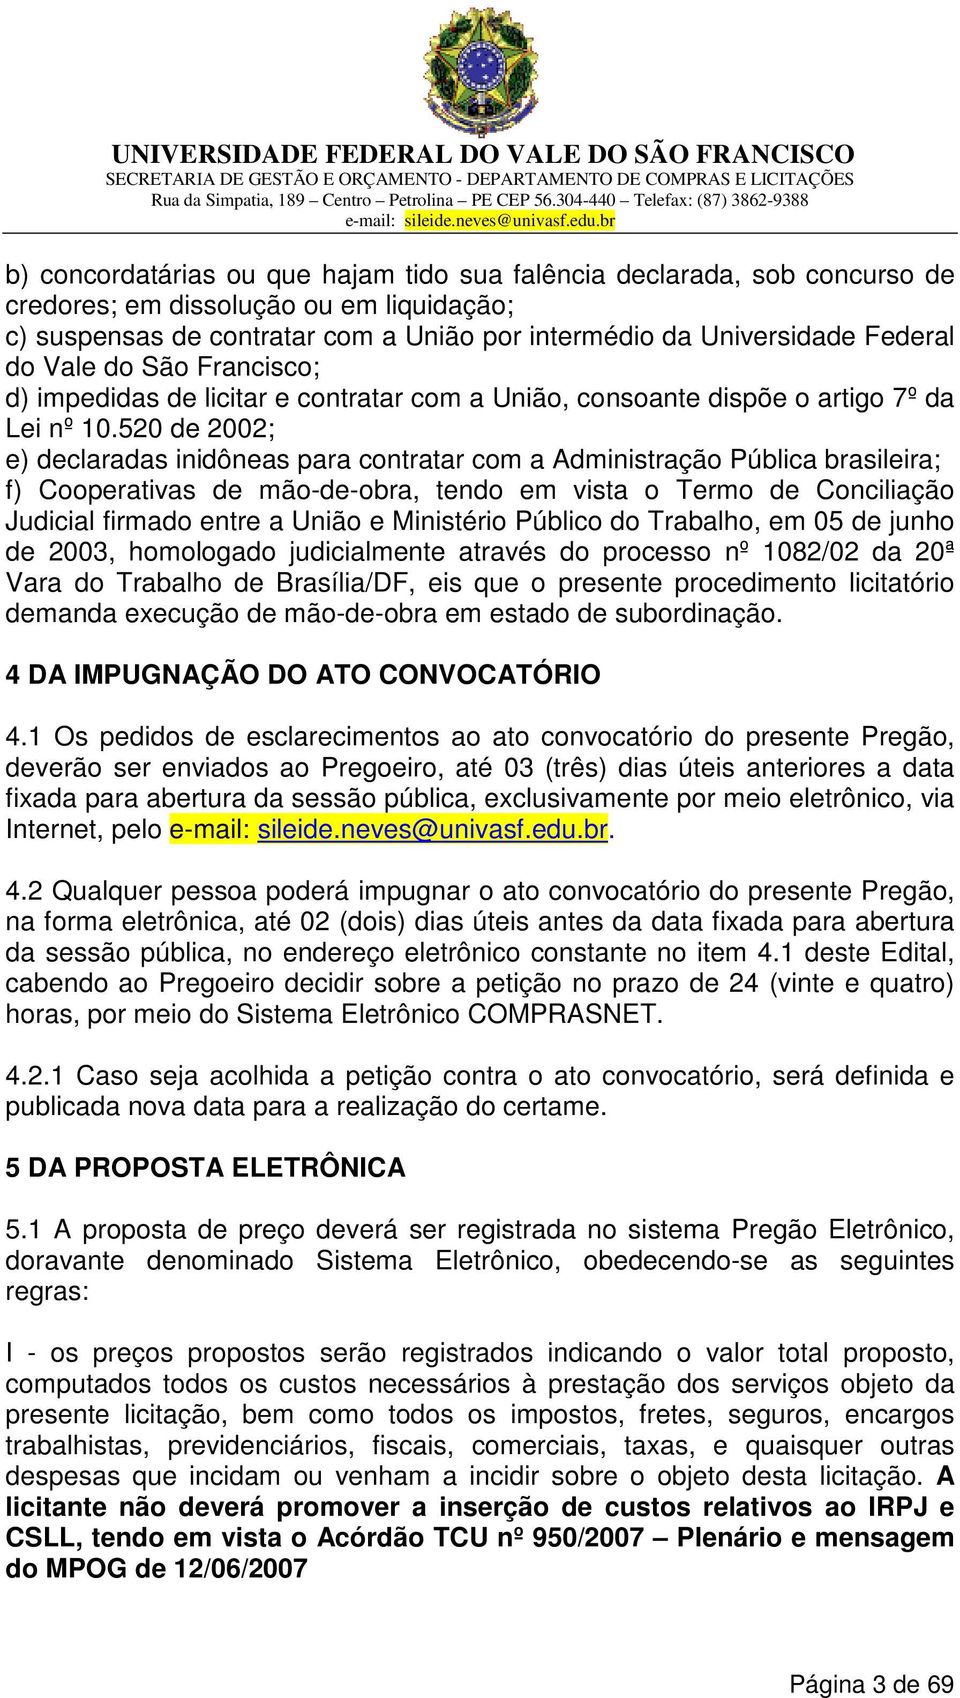 520 de 2002; e) declaradas inidôneas para contratar com a Administração Pública brasileira; f) Cooperativas de mão-de-obra, tendo em vista o Termo de Conciliação Judicial firmado entre a União e